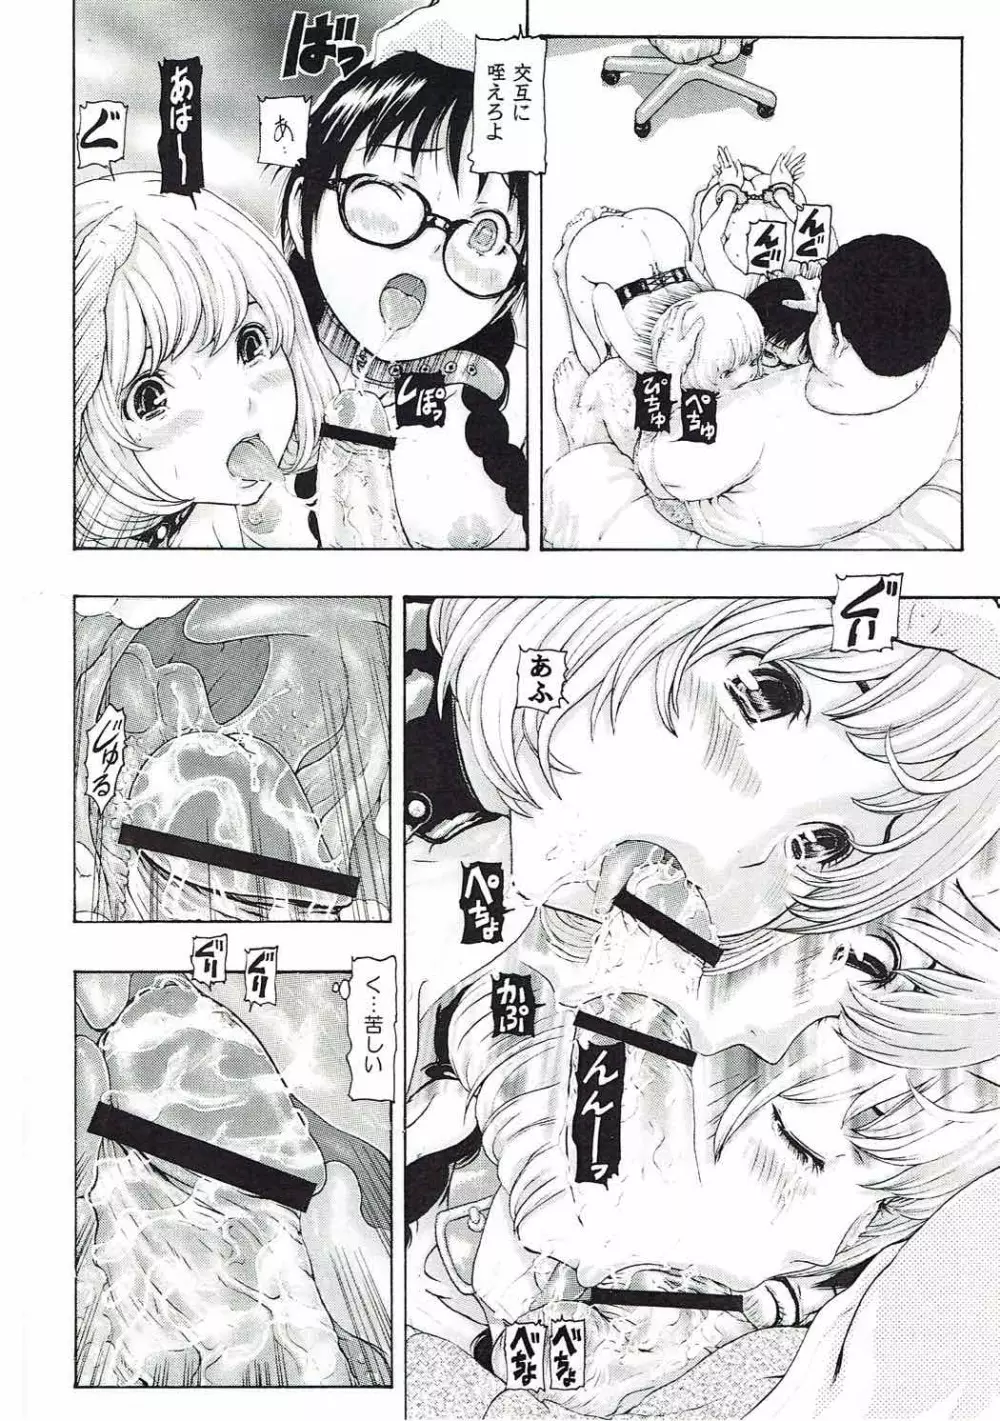 [け゜ぴけ゜ぴ (ぬャカな)] MANKOKU漫画家(とアシスタント)残酷物語 (バクマン。) 11ページ